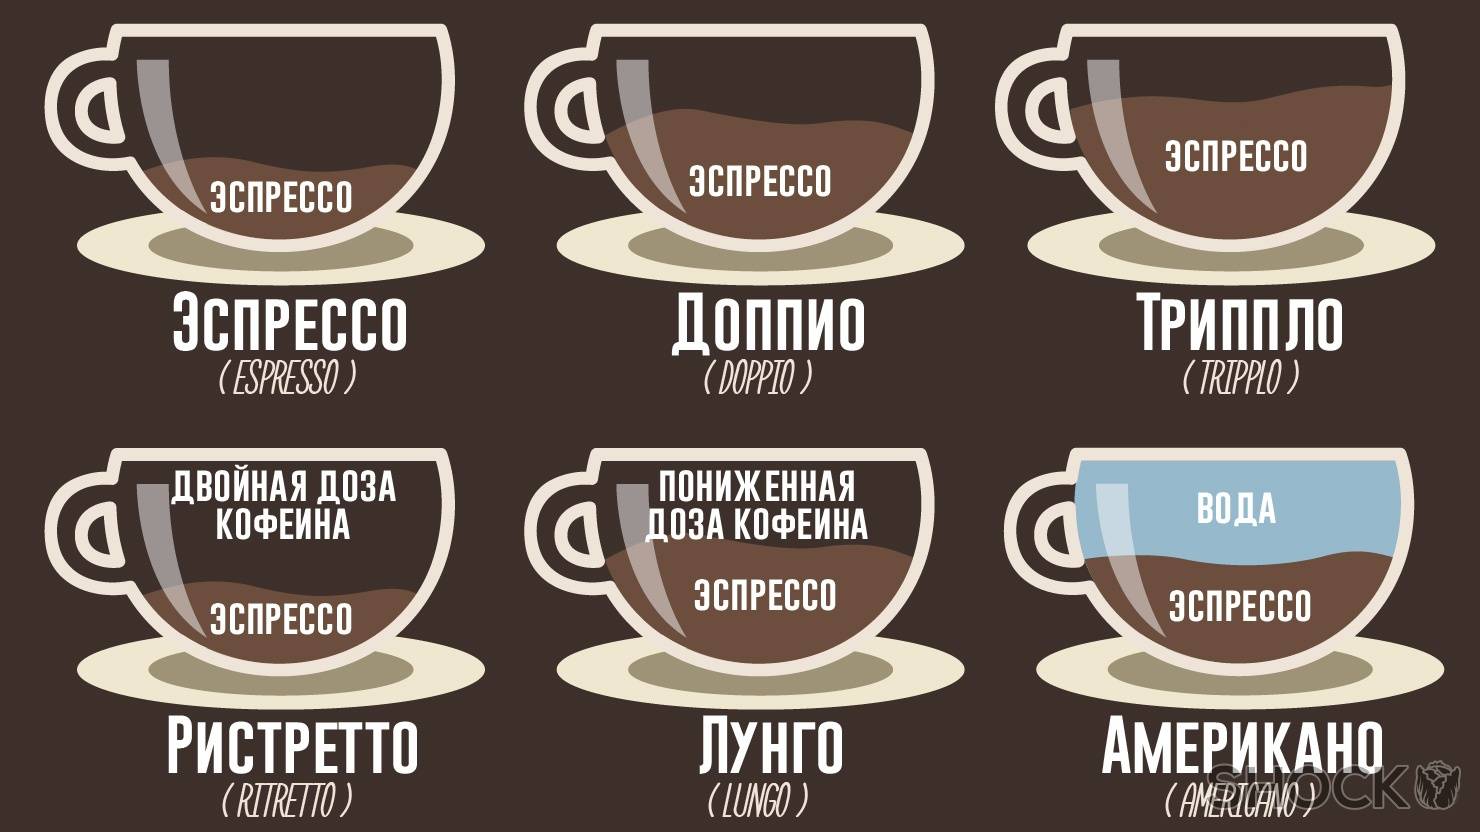 Как правильно приготовить кофе-капучино и как его рекомендуется пить?